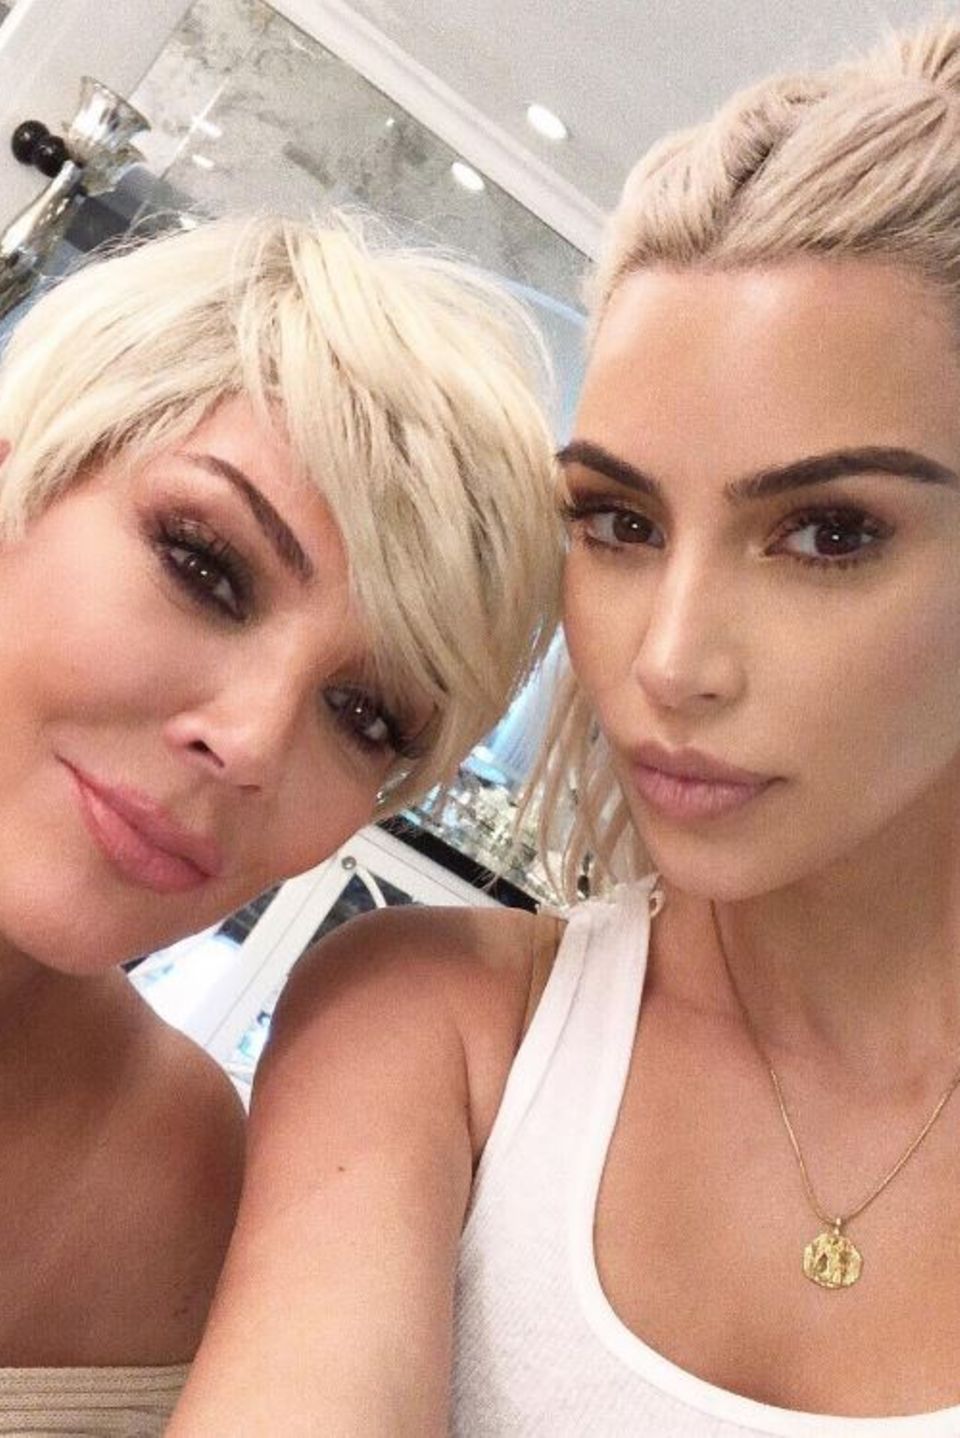 5. November 2017  Ein Selfie mit der lieben Mama: Im blonden Partnerlook posieren Kim Kardashian und Kris Jenner für das nette Erinnerungsfoto.